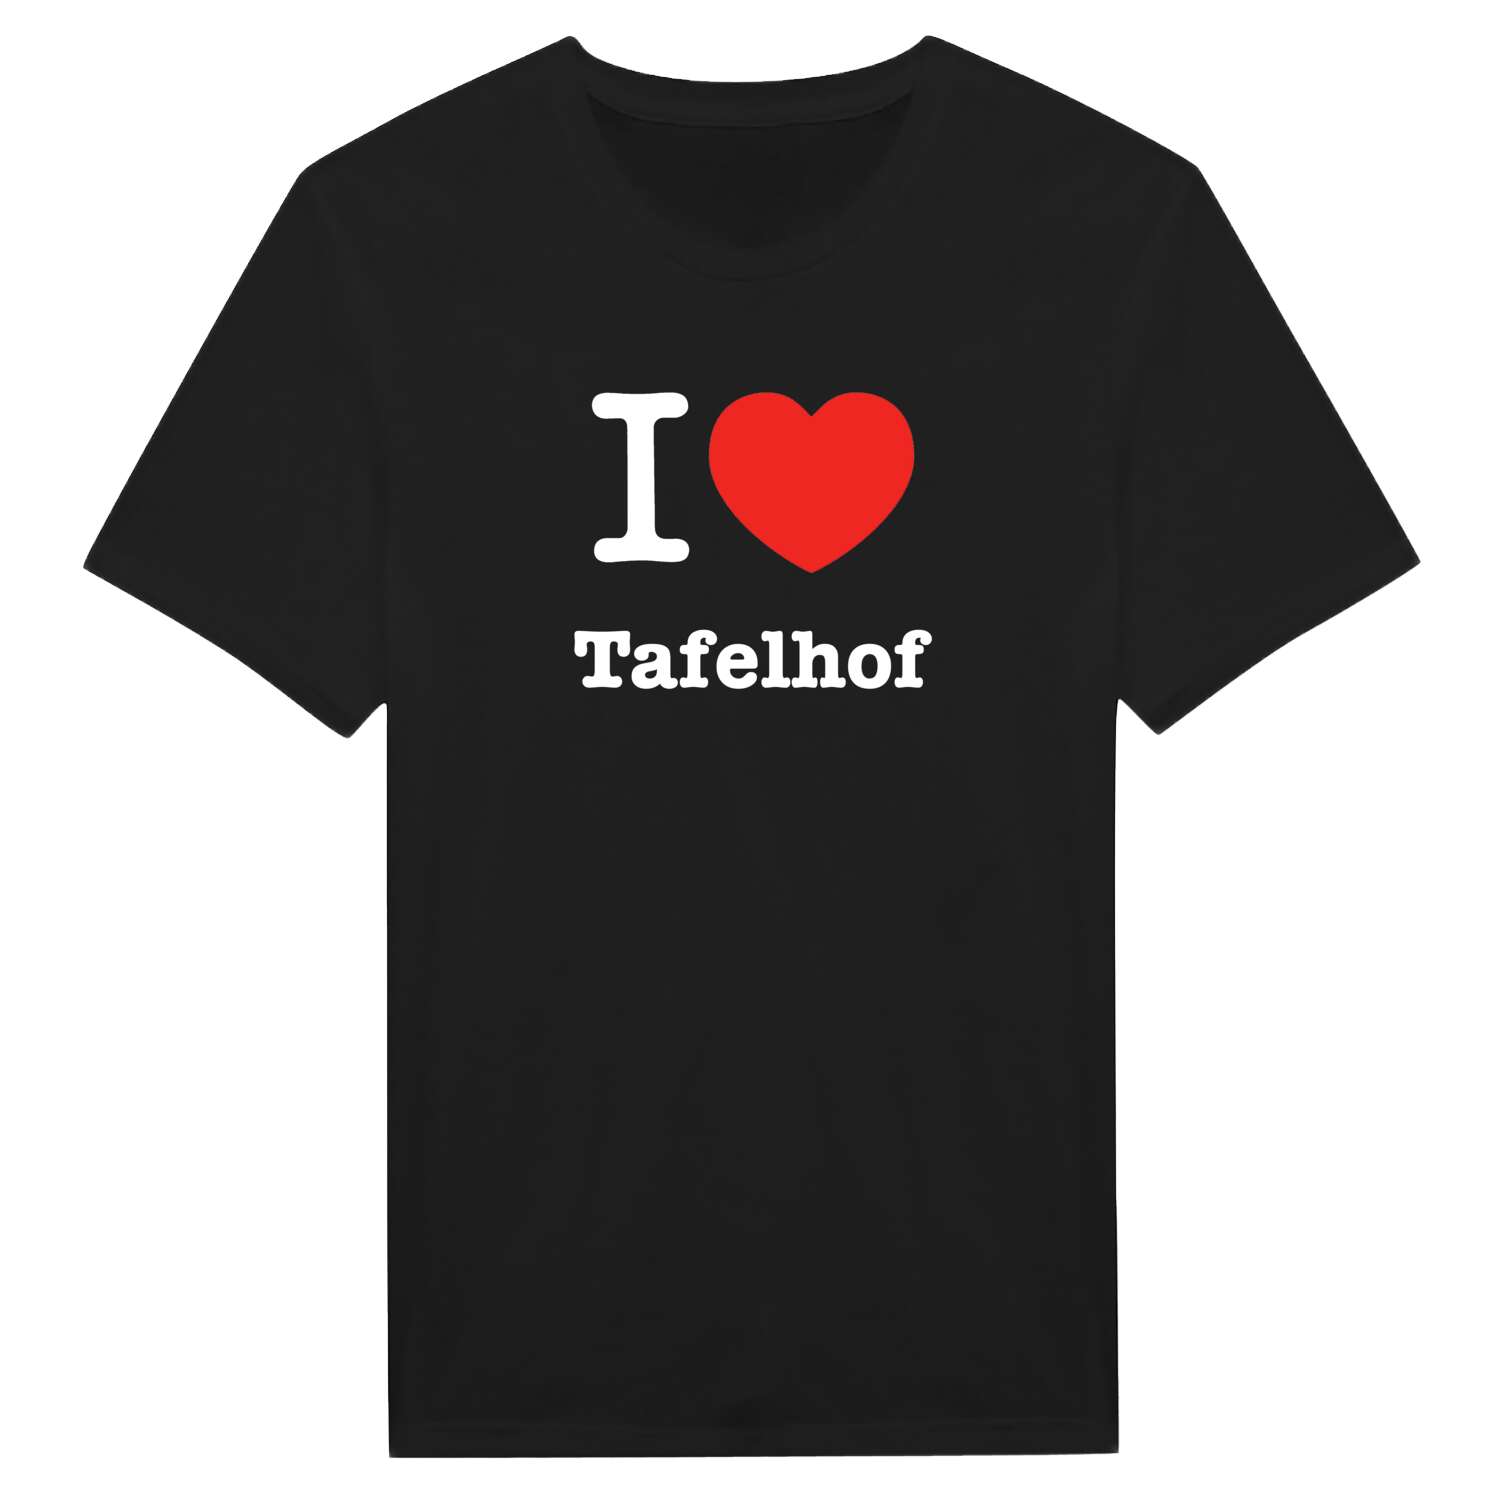 Tafelhof T-Shirt »I love«